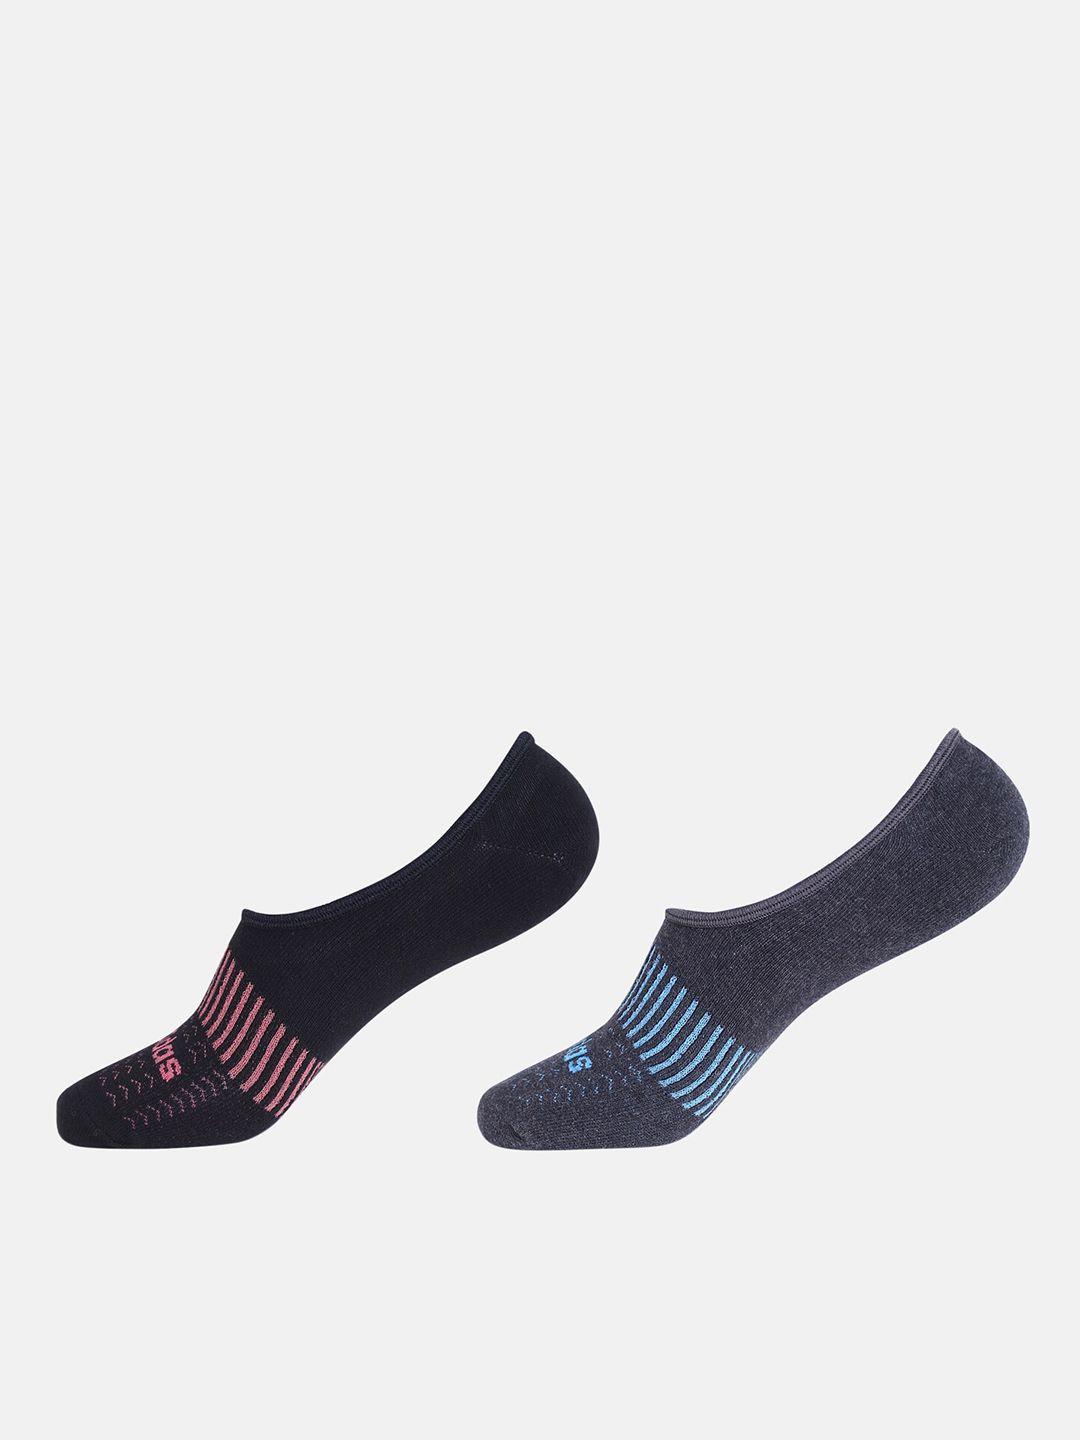 adidas-men-pack-of-2-patterned-shoe-liner-socks